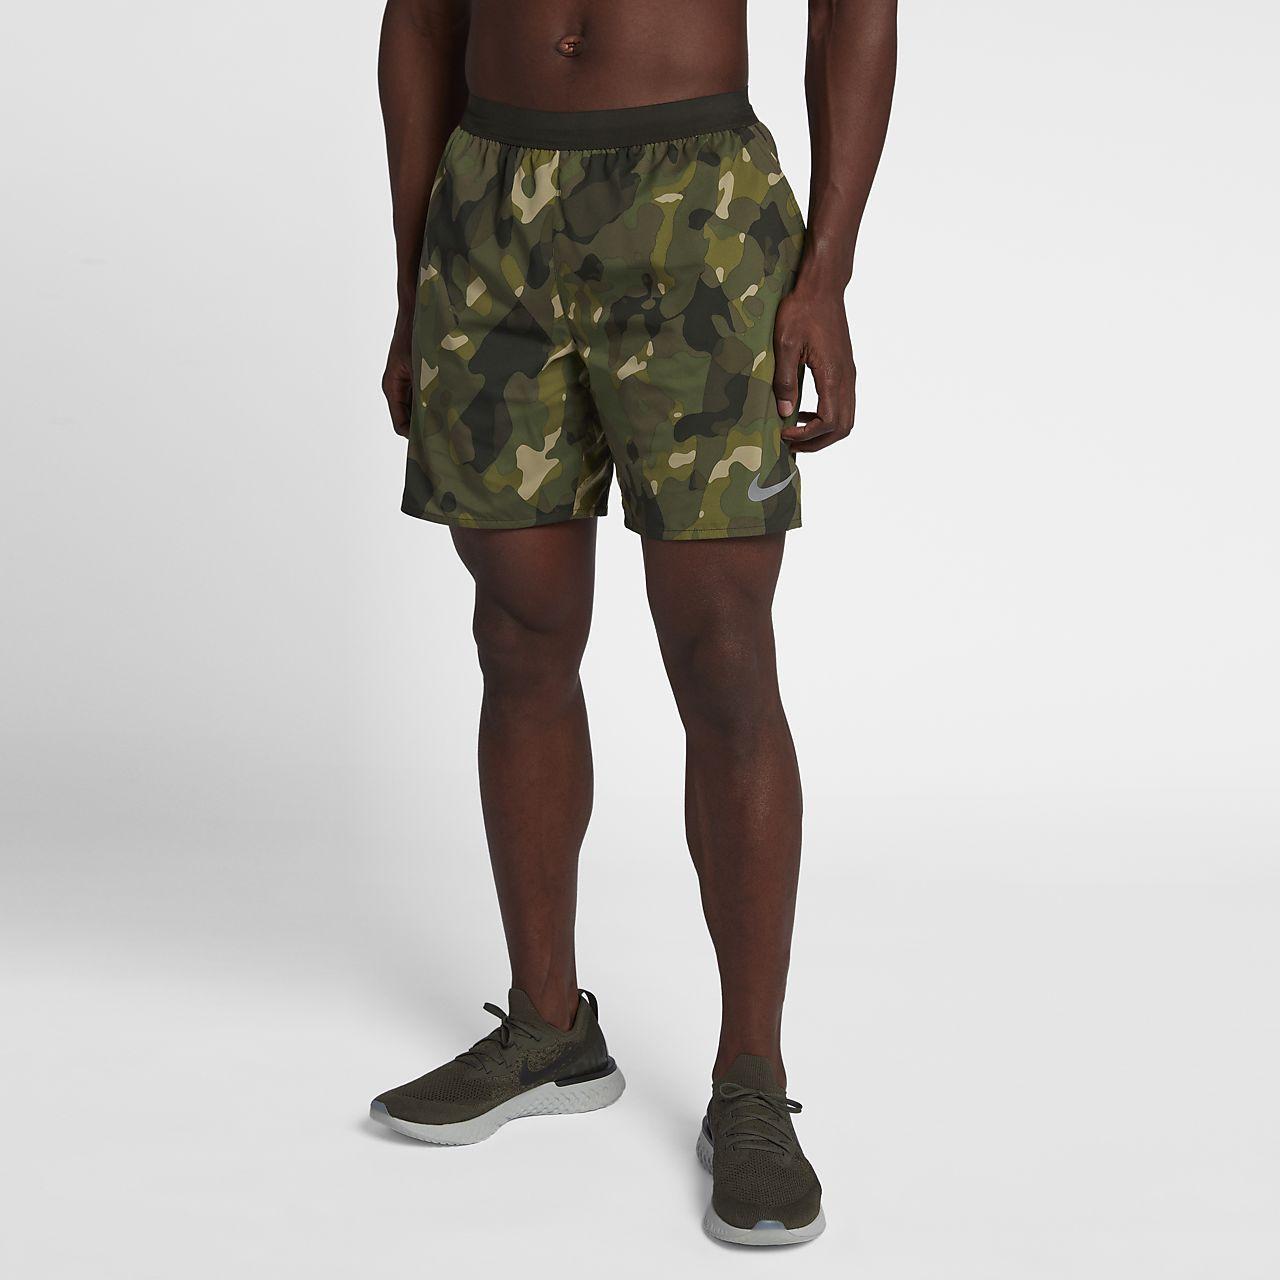 Camouflage Nike Logo - Nike Distance Men's 7 18cm Camo Running Shorts. Nike.com LU